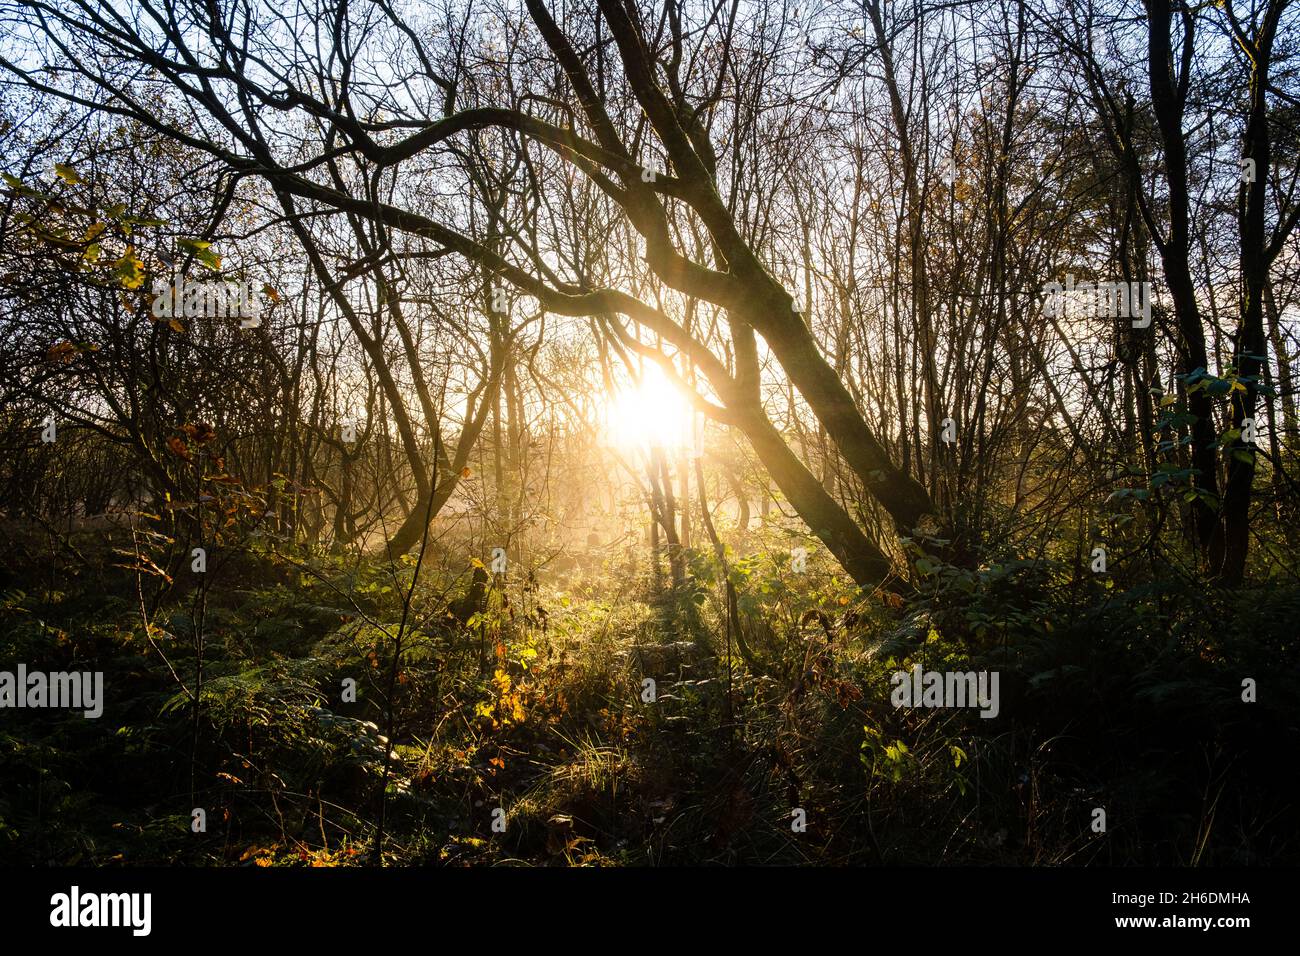 Natur in Eskrigg mit stimmungsvoller Beleuchtung Buch decken Material Bäume und Gras mit goldenen Sonnenfarben Licht Stockfoto